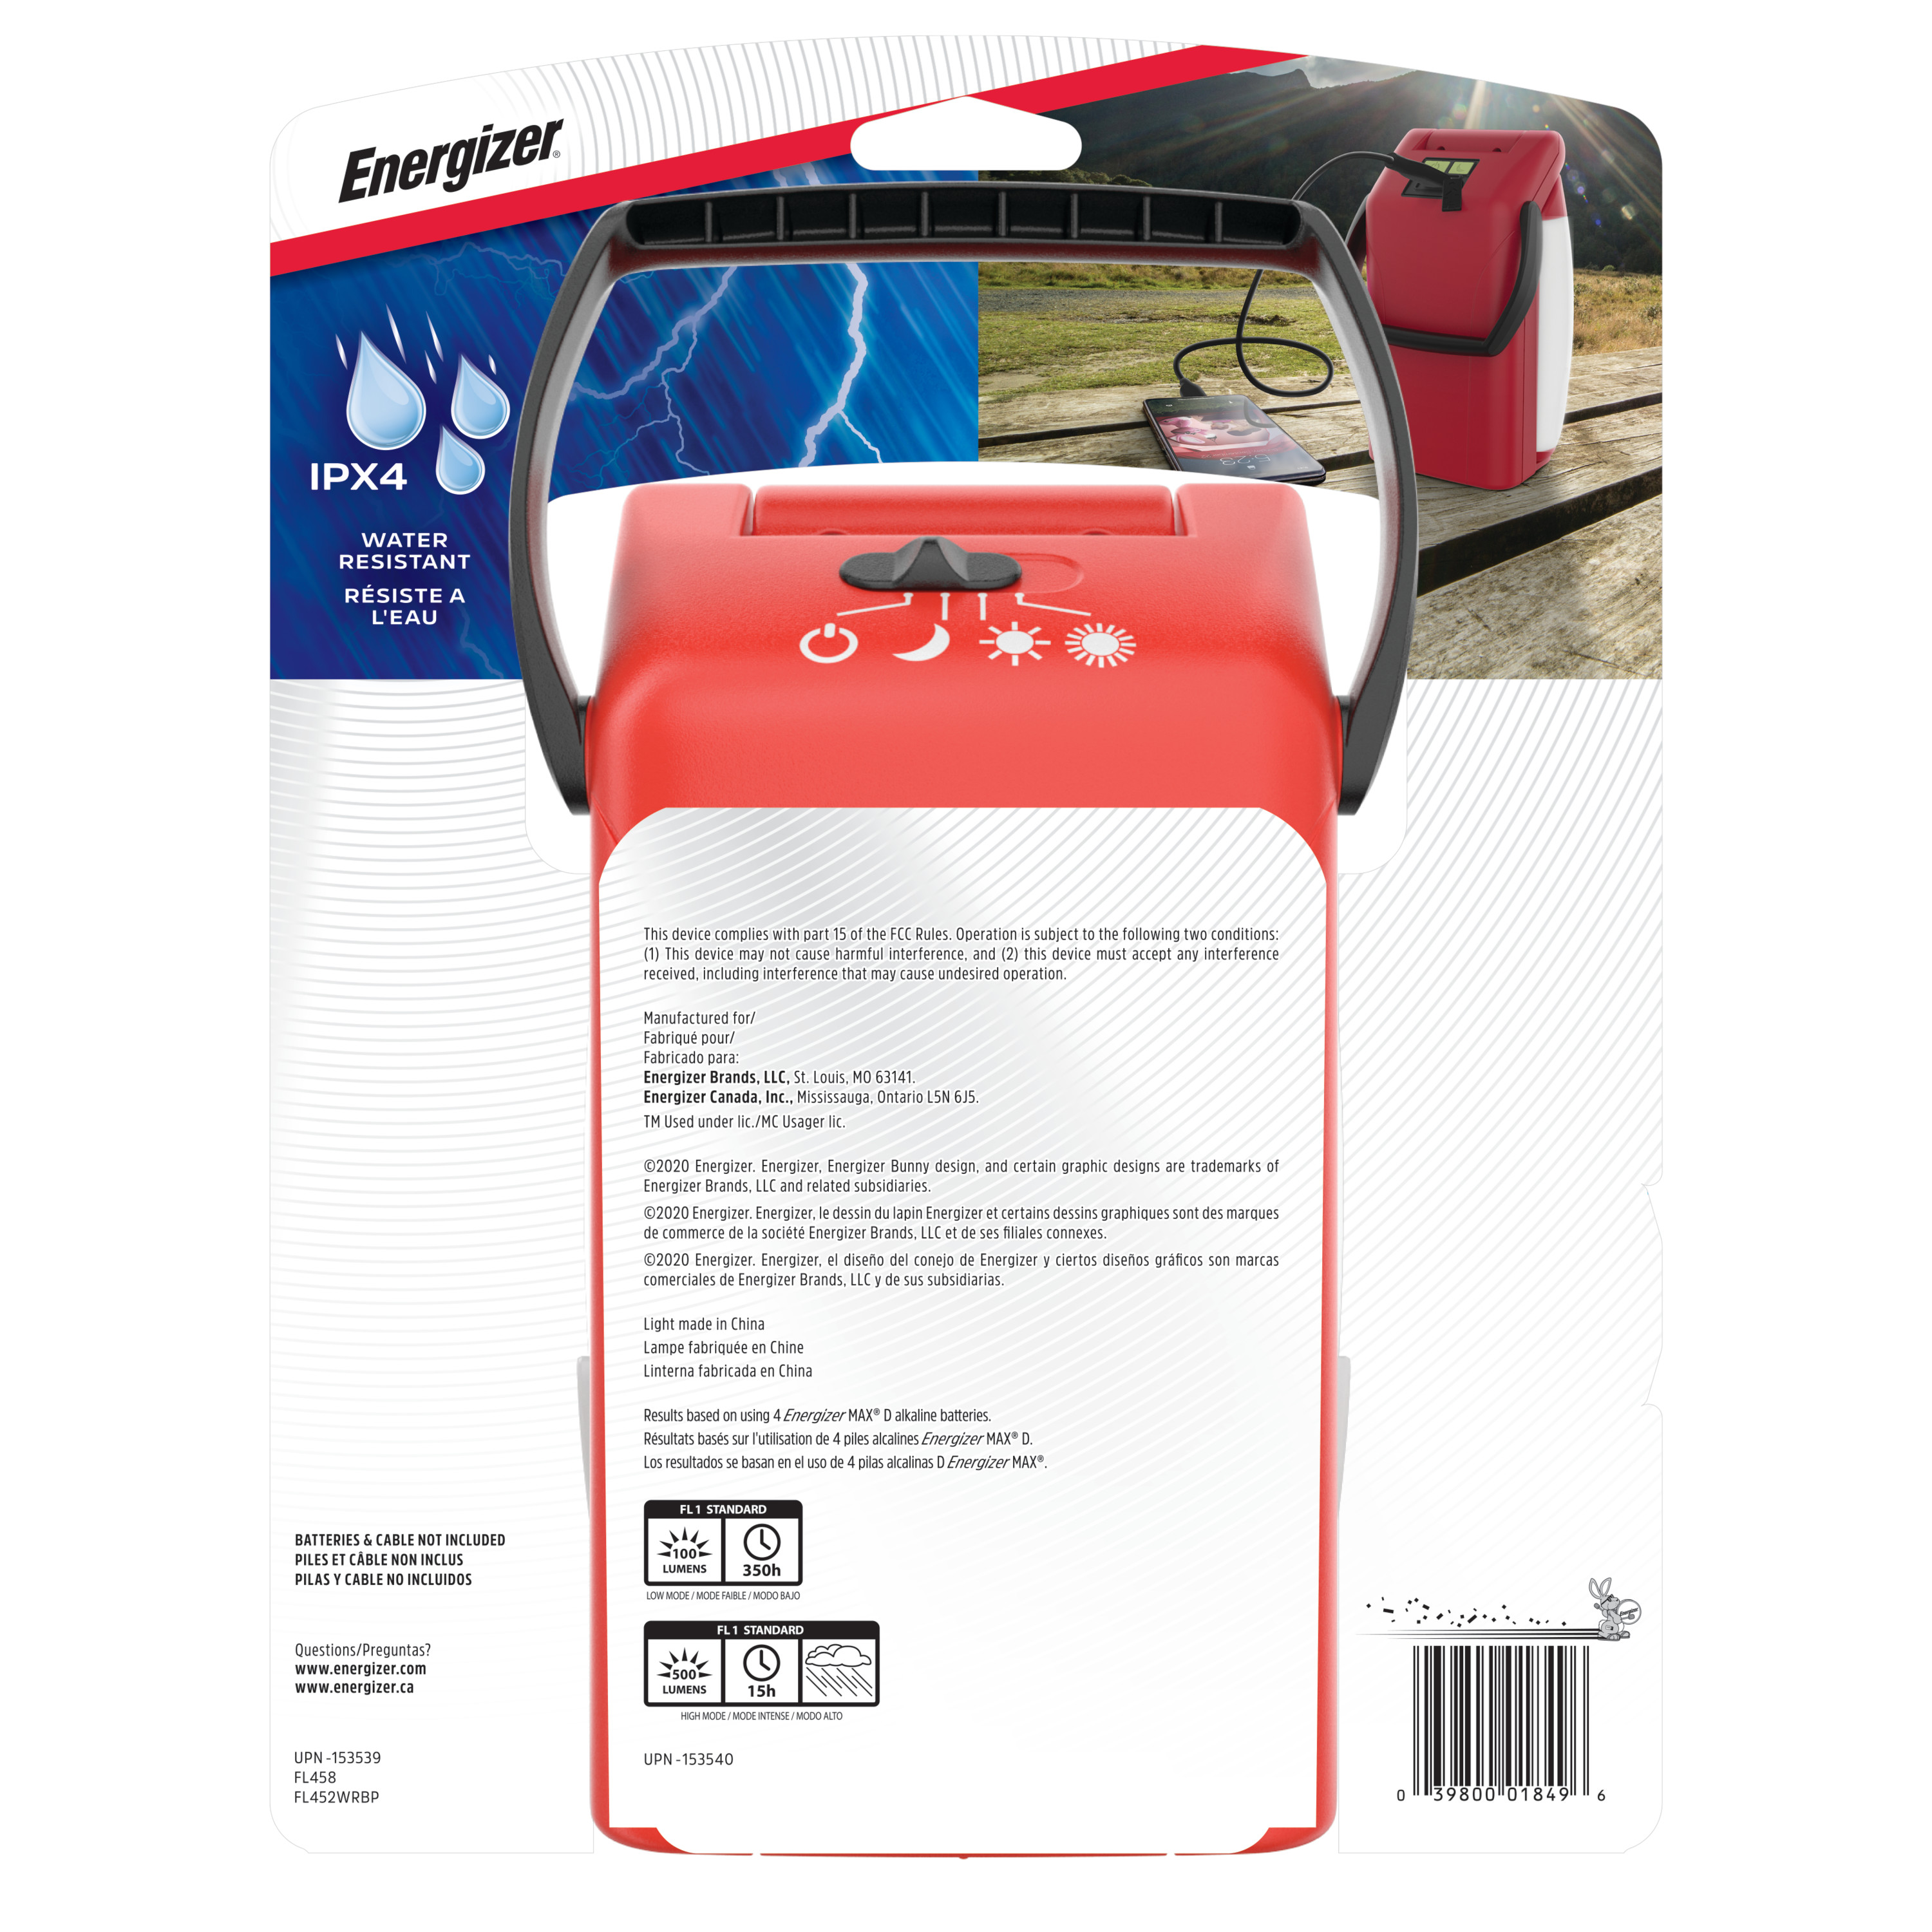 Energizer Emergency Folding LED Lantern, Red, 500 Lumens, IPX4 Water Resistant, Portable LED Light, Durable Emergency Lantern - image 11 of 11